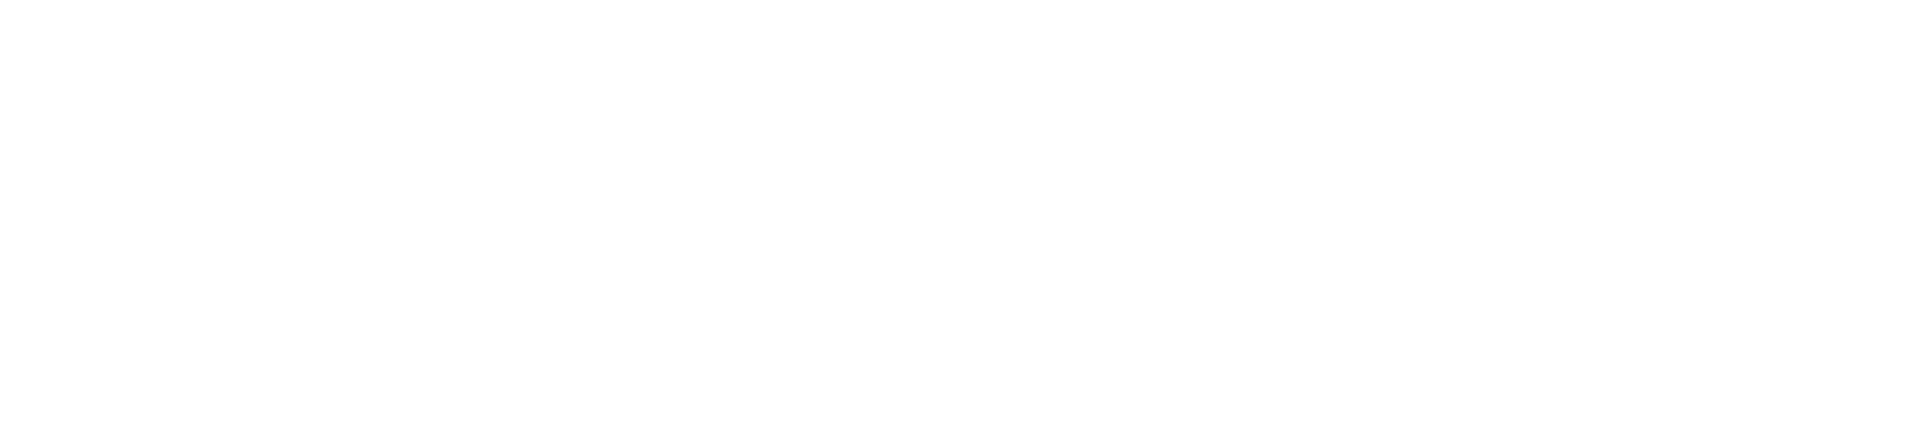 Logo Asimary s.r.o.